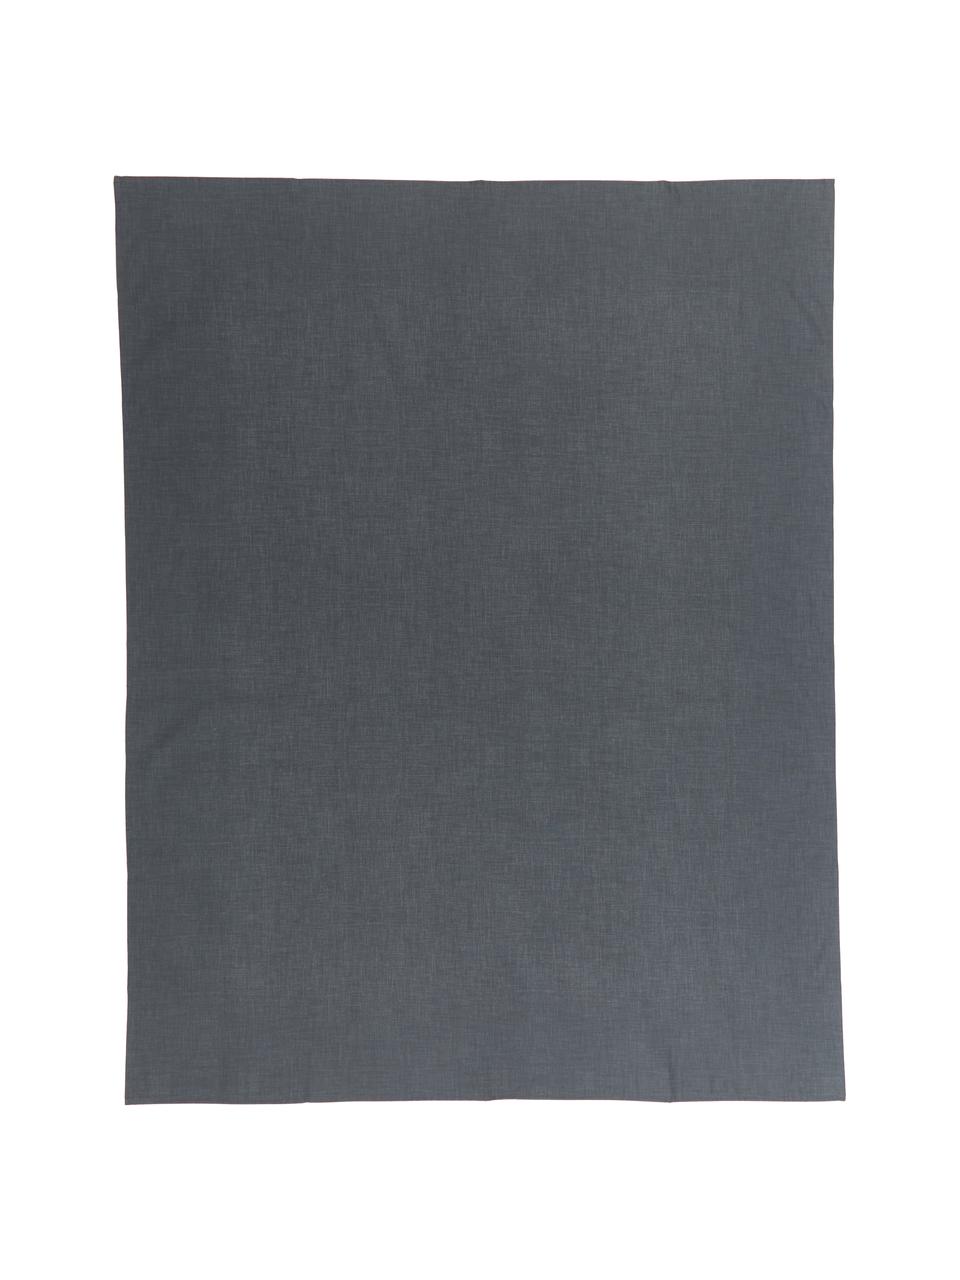 Mantel Alla antimanchas resinado, 50% algodón, 50% poliéster con revestimiento de resina, Negro, Para 2 comesales (An 140 x L 100 cm)